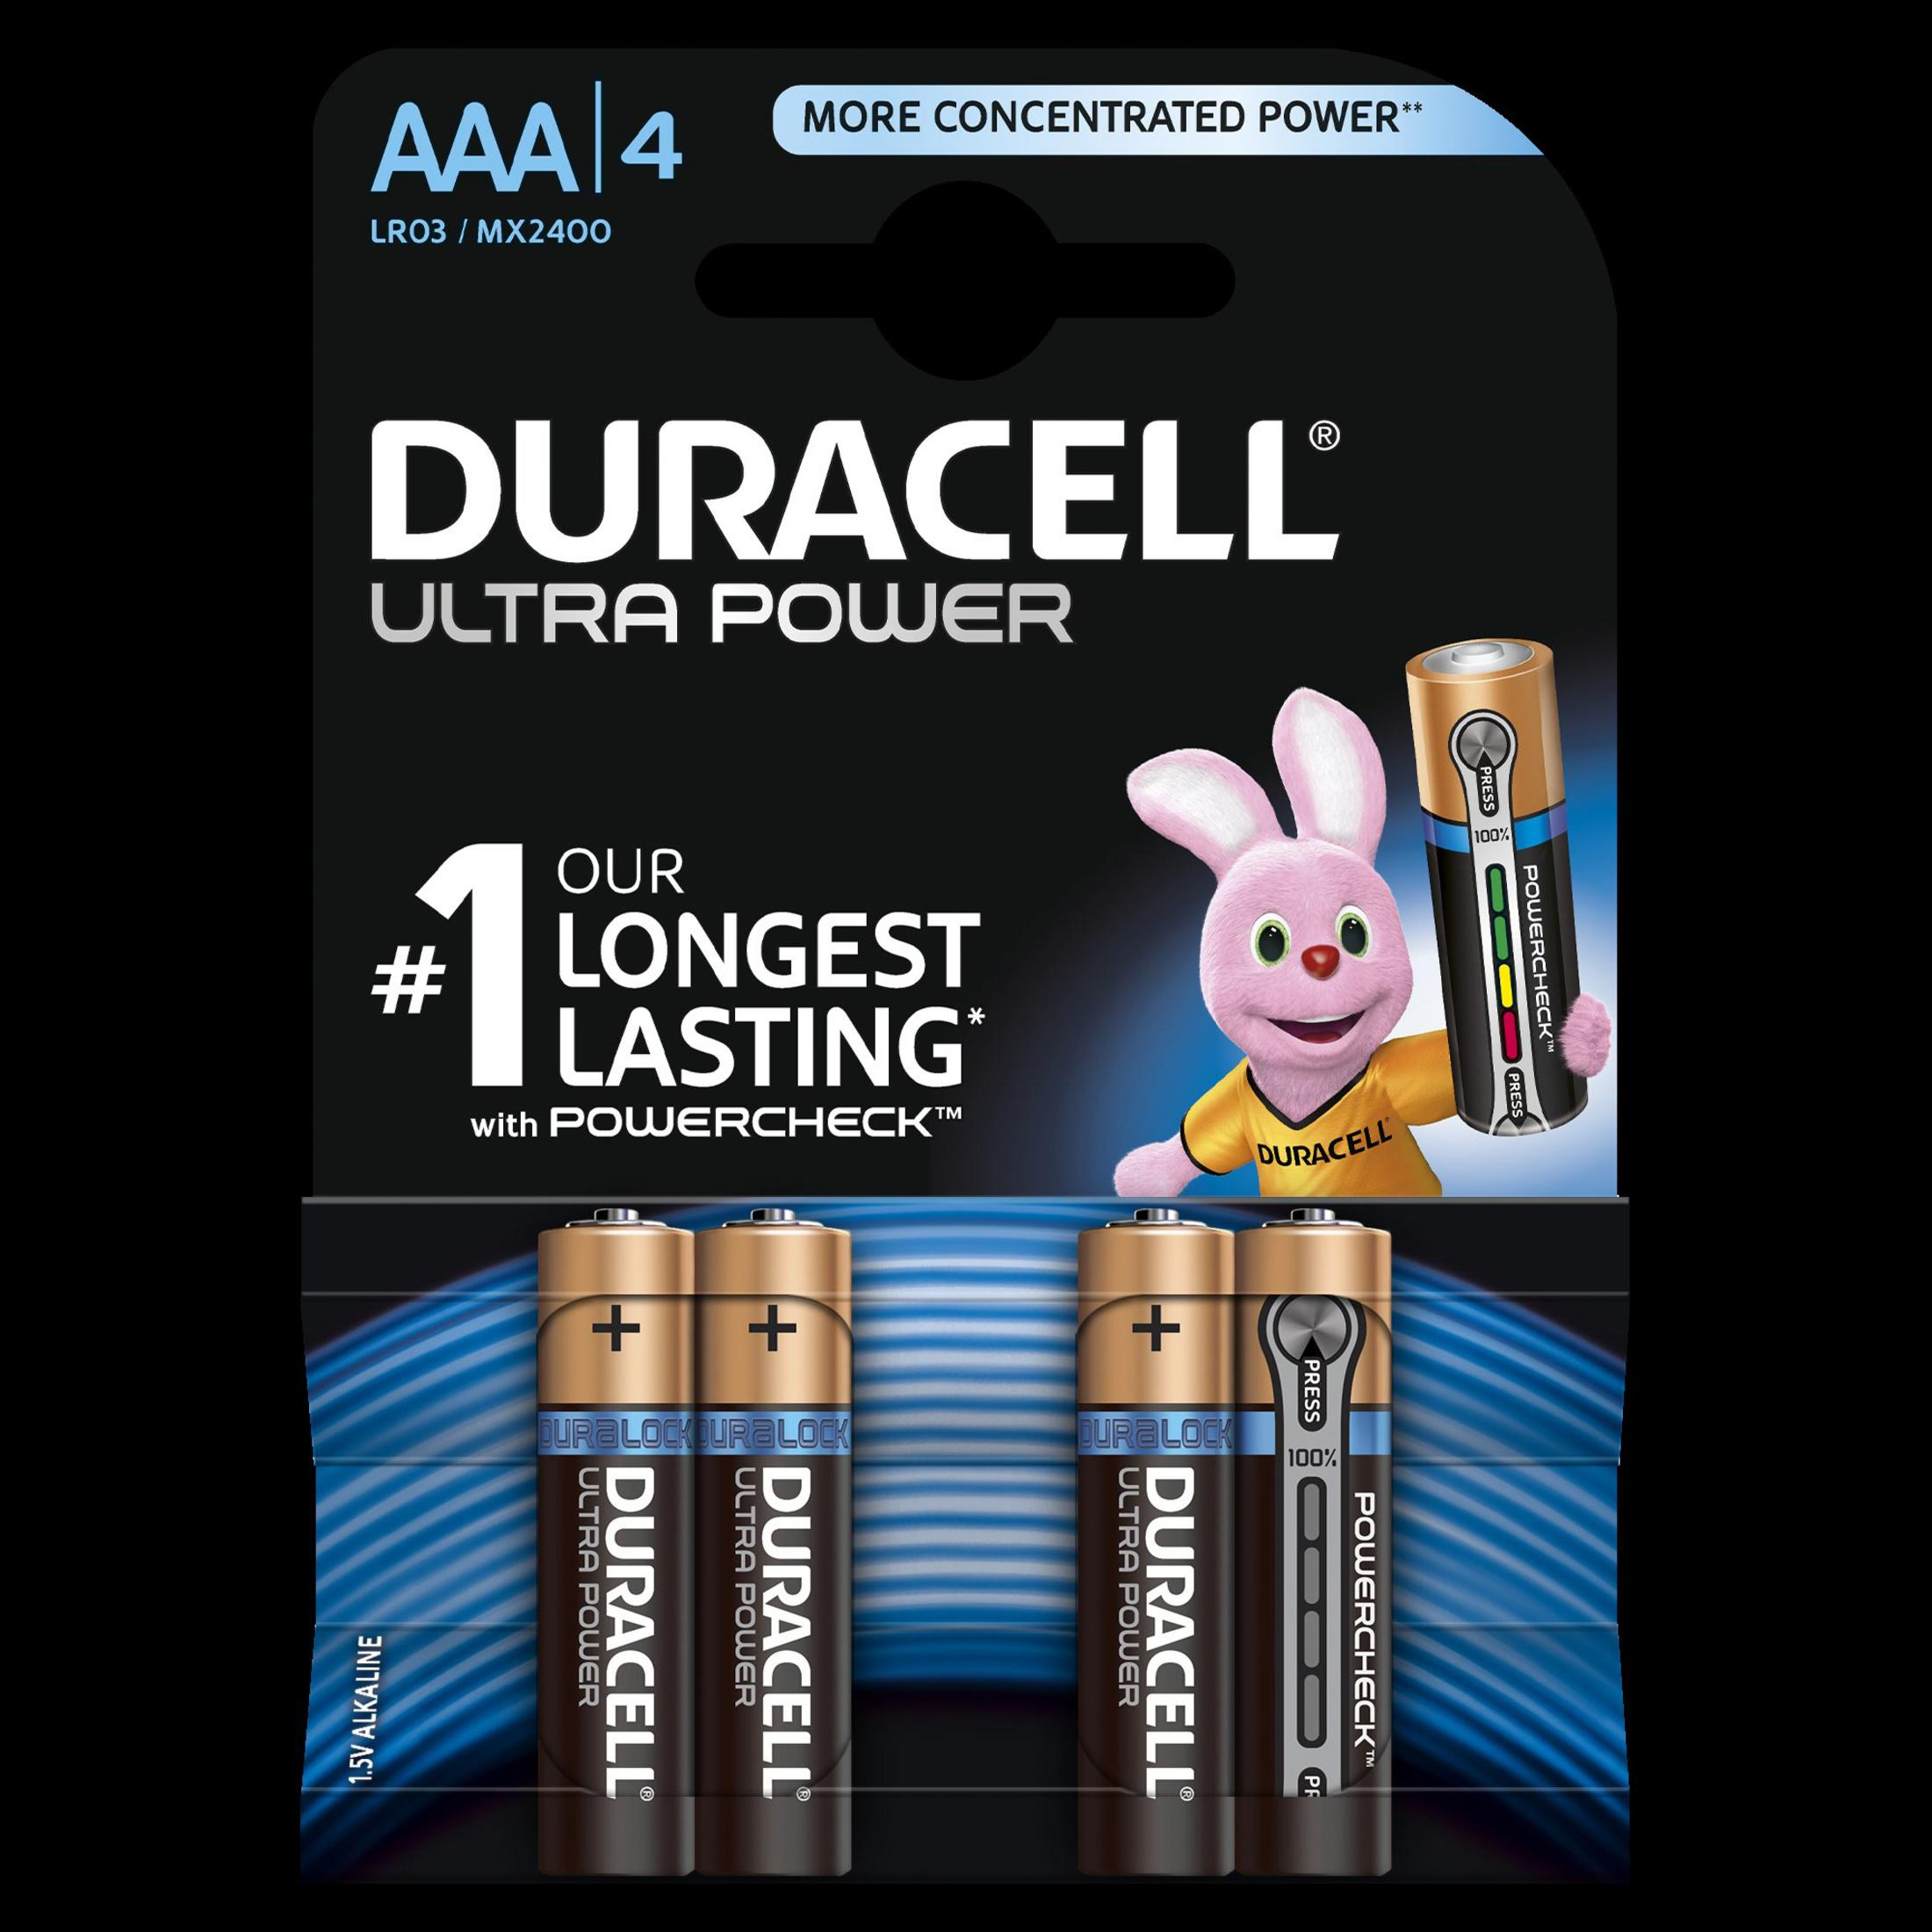 Batterie, DURACELL UP MN2400/LR03 4 Micro K4 Alkaline, AAA 1.5 Volt AAA 002692 Stück